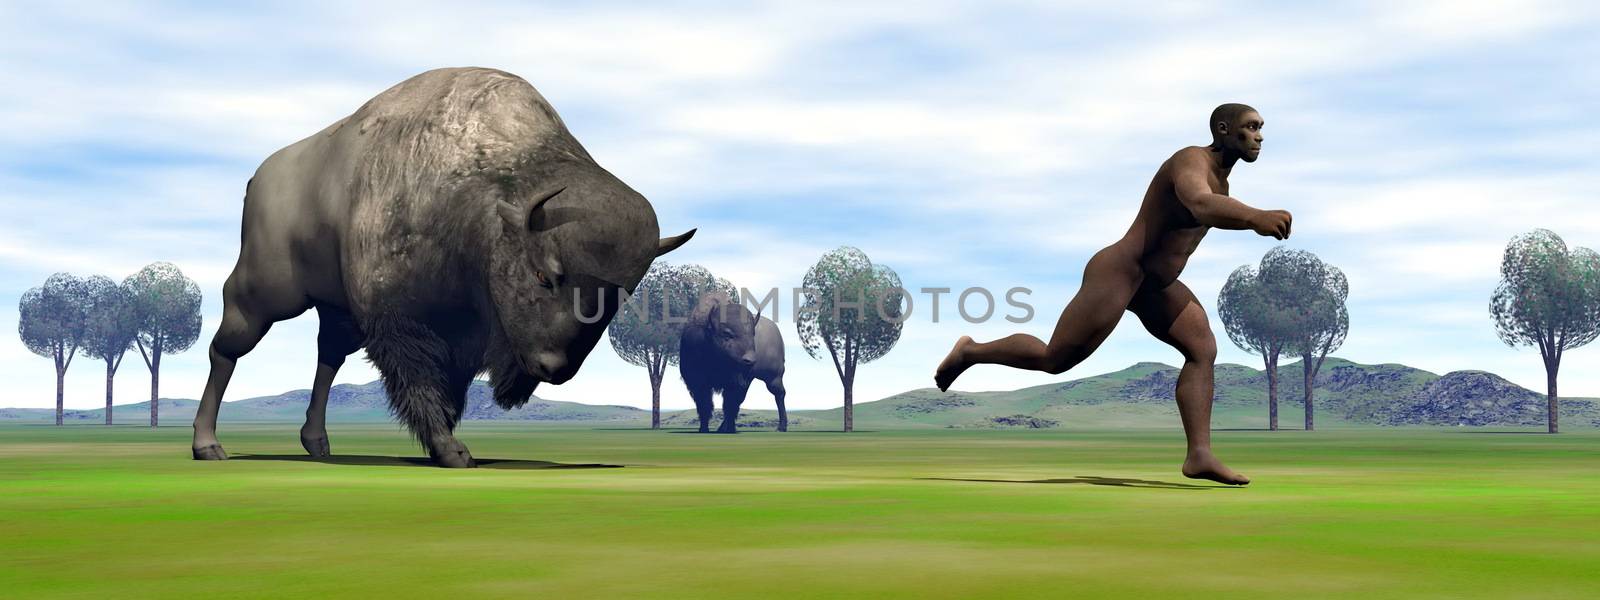 Bison charging homo erectus - 3D render by Elenaphotos21